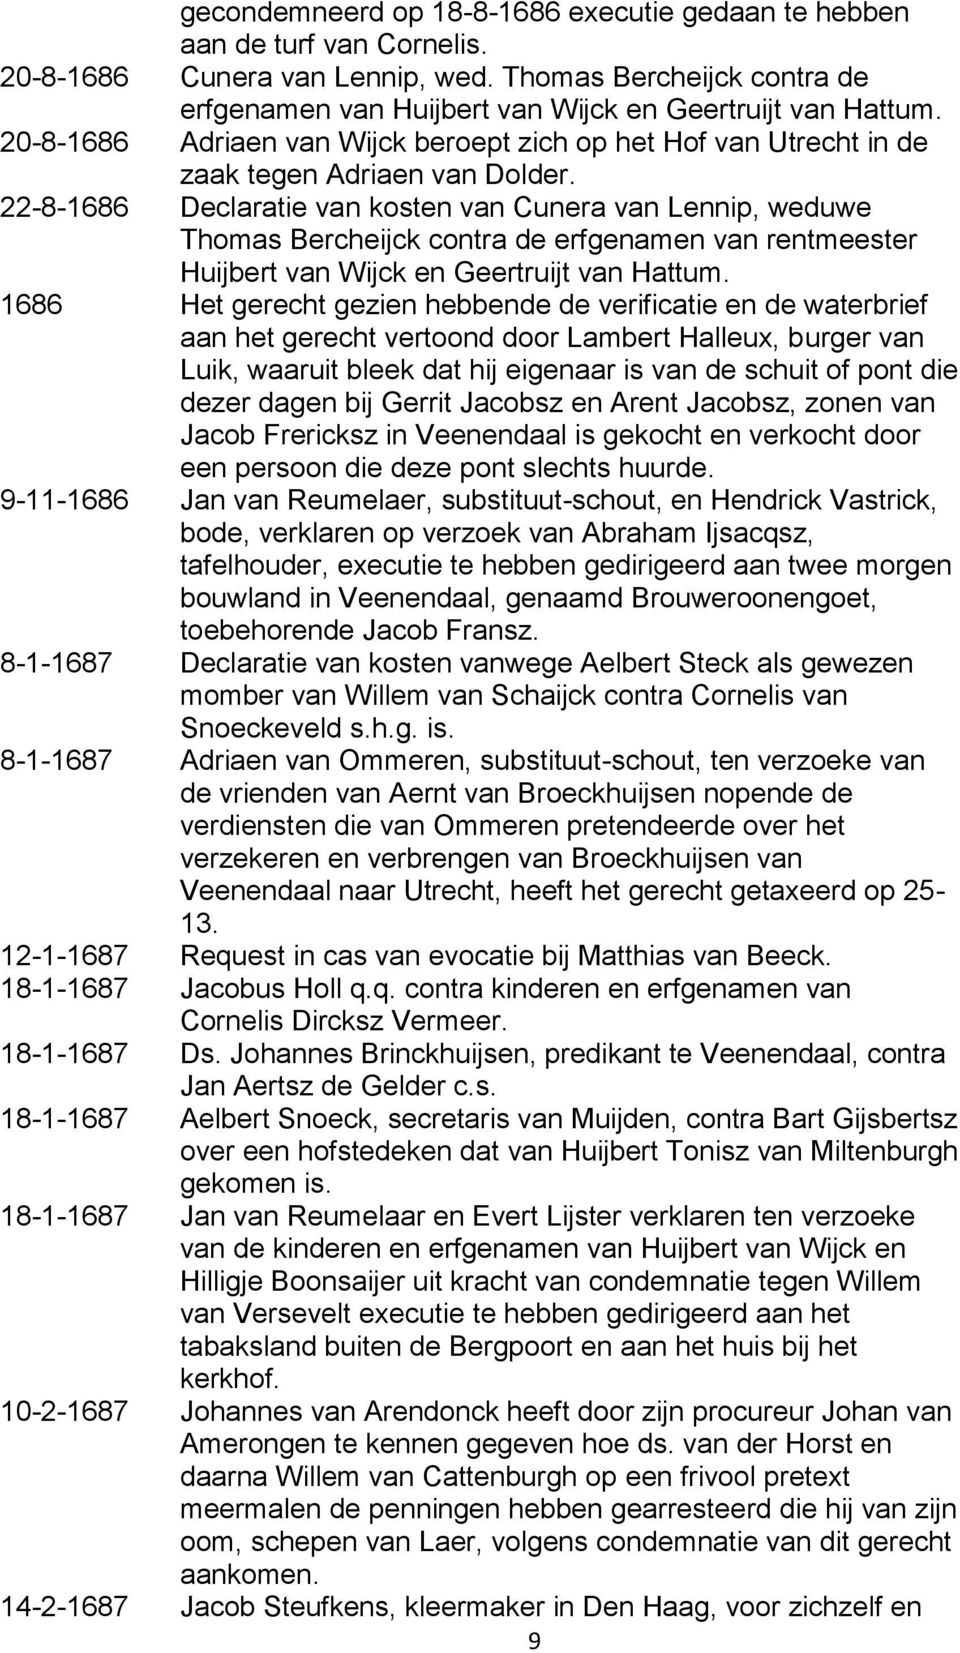 22-8-1686 Declaratie van kosten van Cunera van Lennip, weduwe Thomas Bercheijck contra de erfgenamen van rentmeester Huijbert van Wijck en Geertruijt van Hattum.